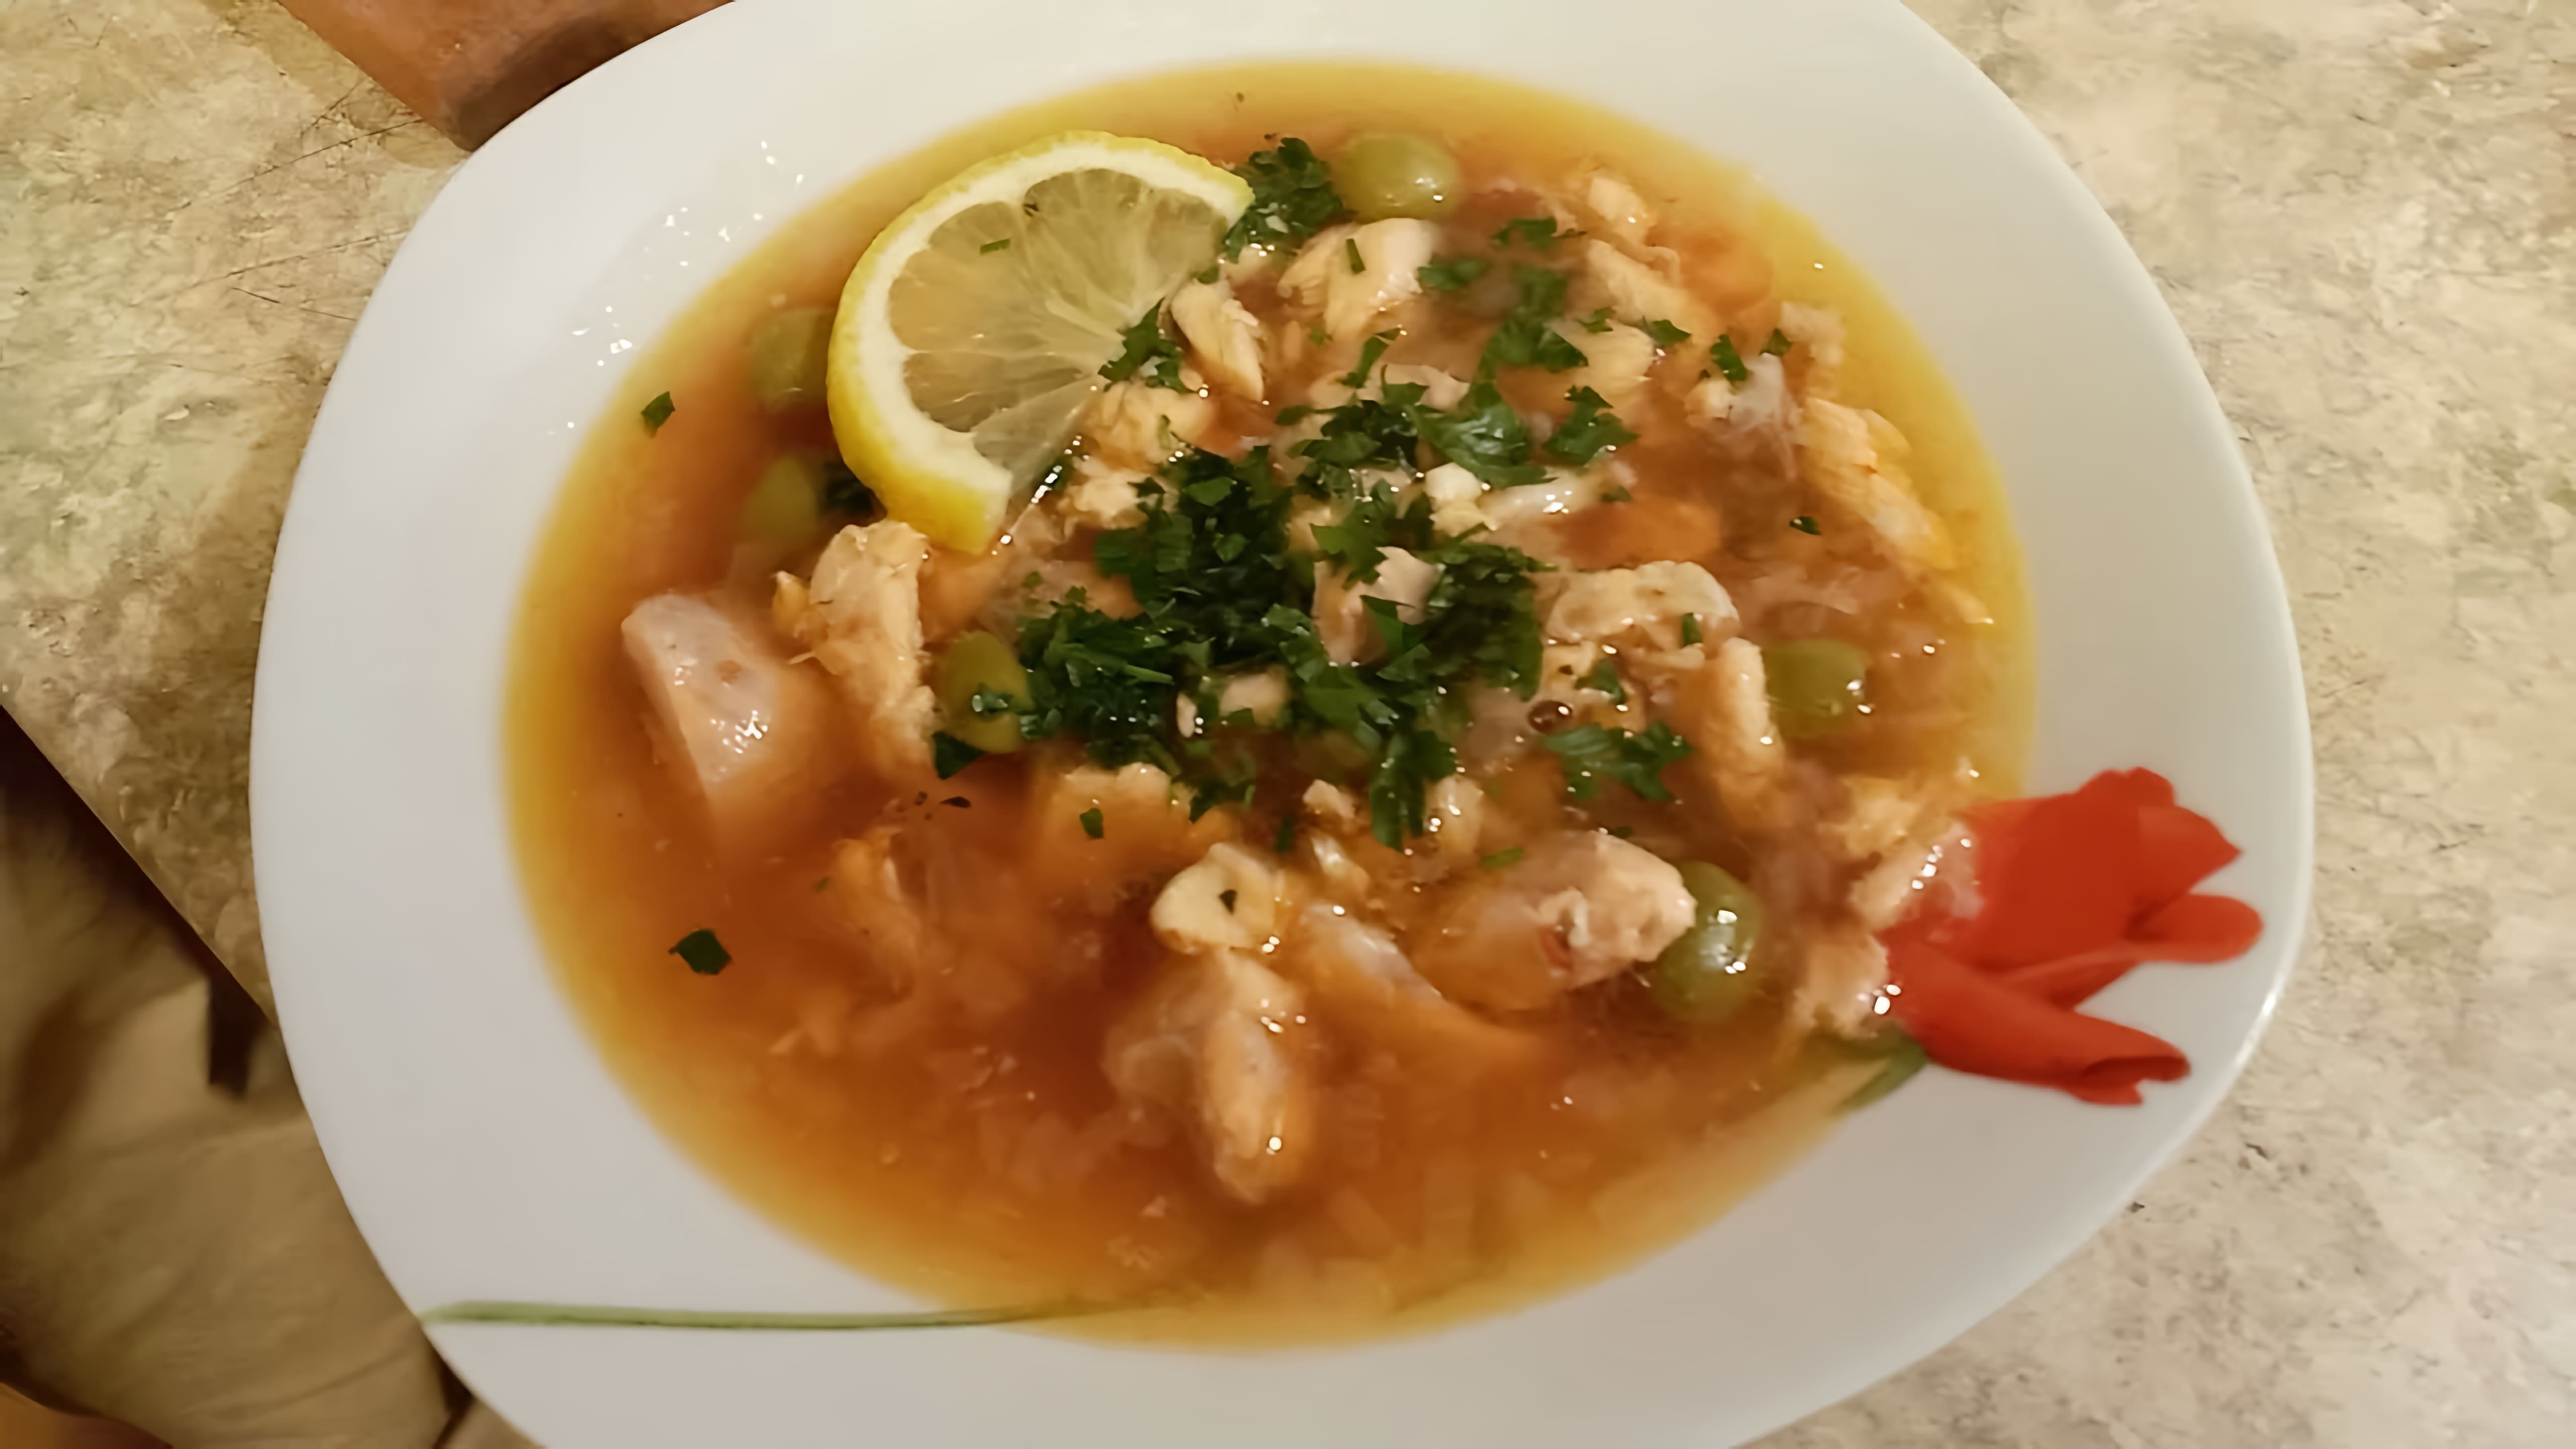 Рыбная солянка - это вкусное и питательное блюдо, которое можно приготовить в домашних условиях